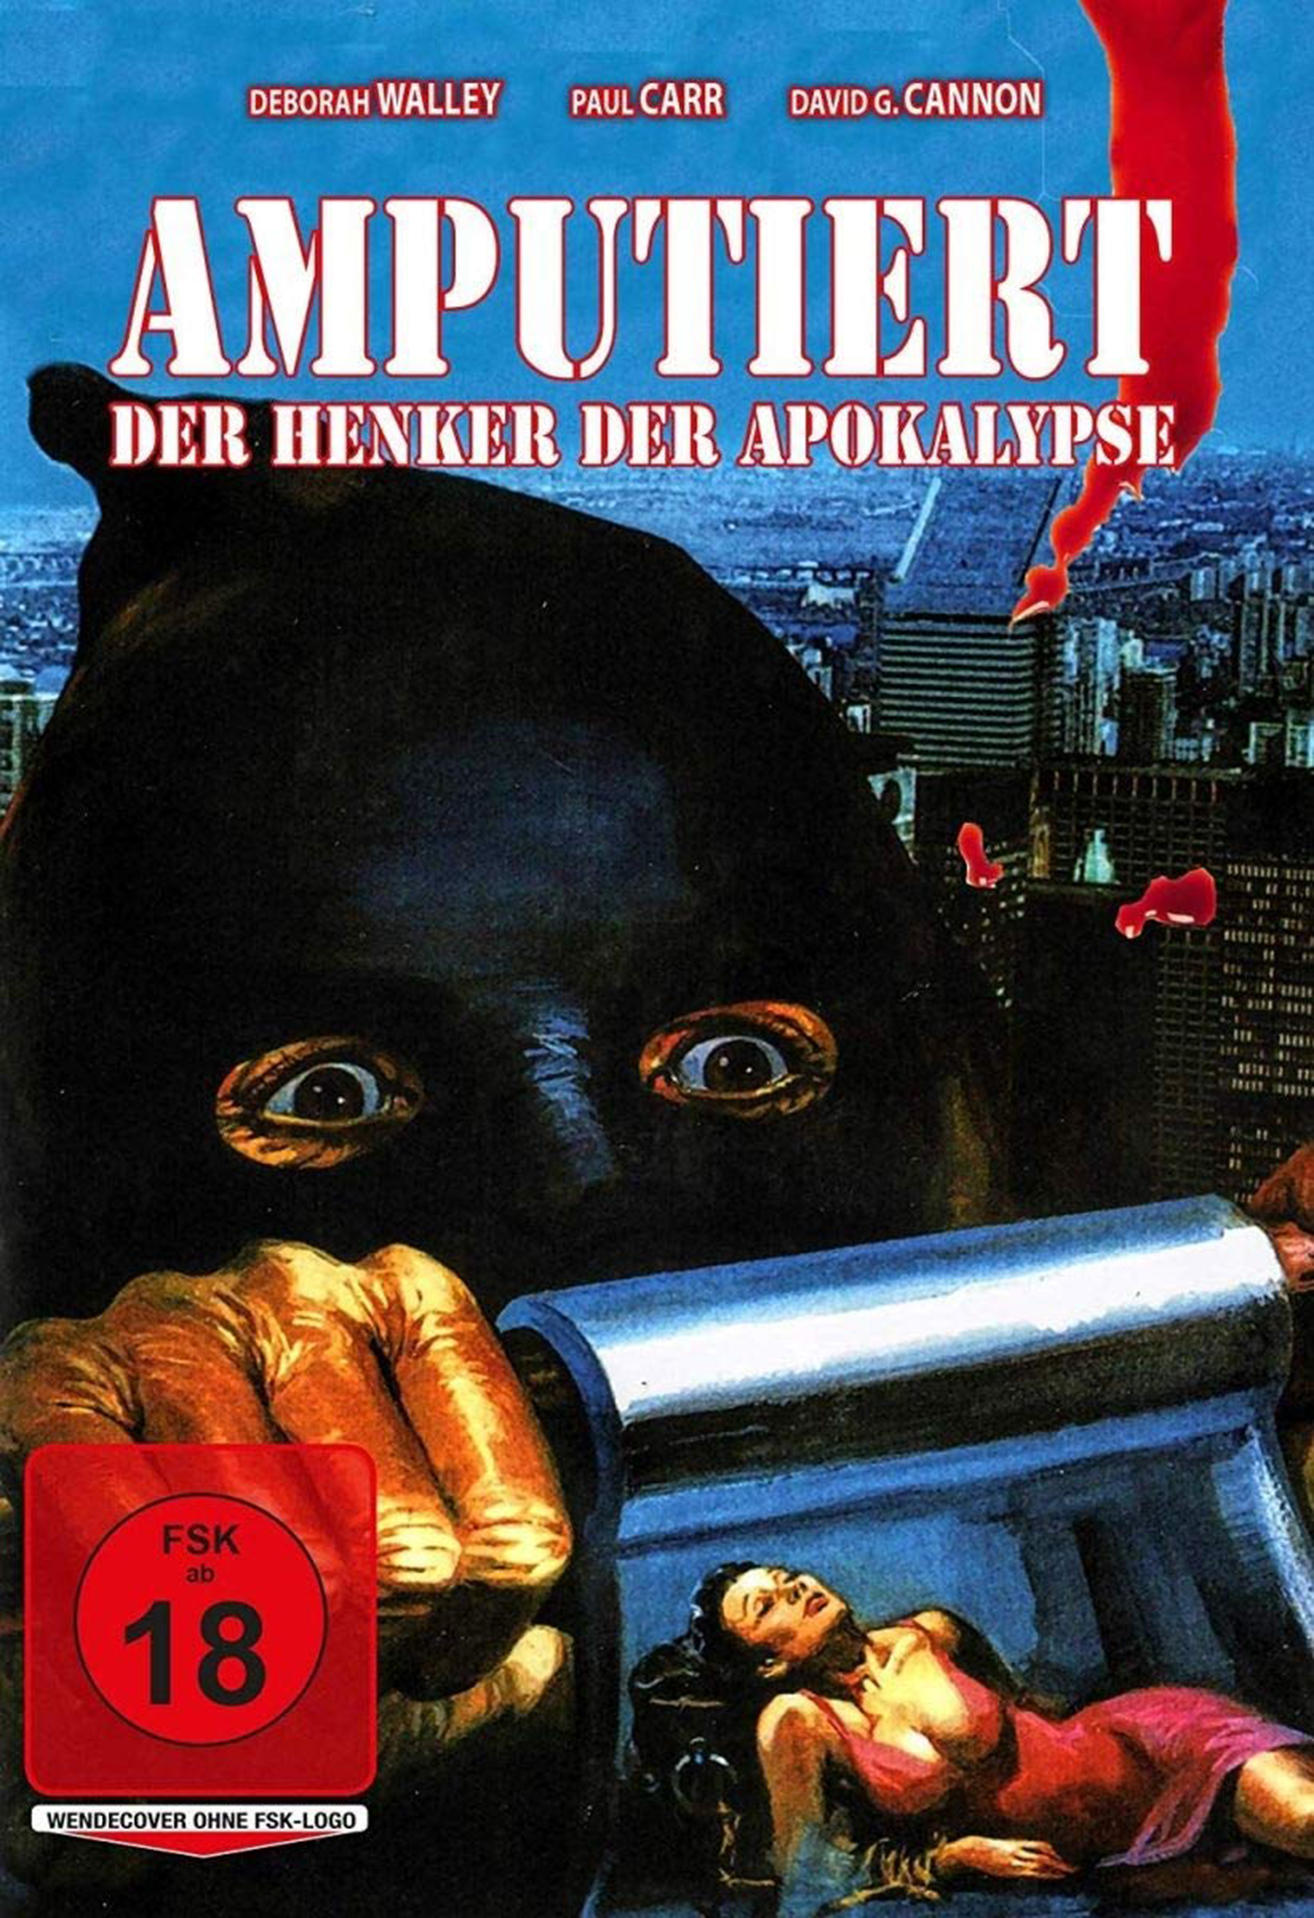 Apokalypse DVD Amputiert-Der (1973) Henker der